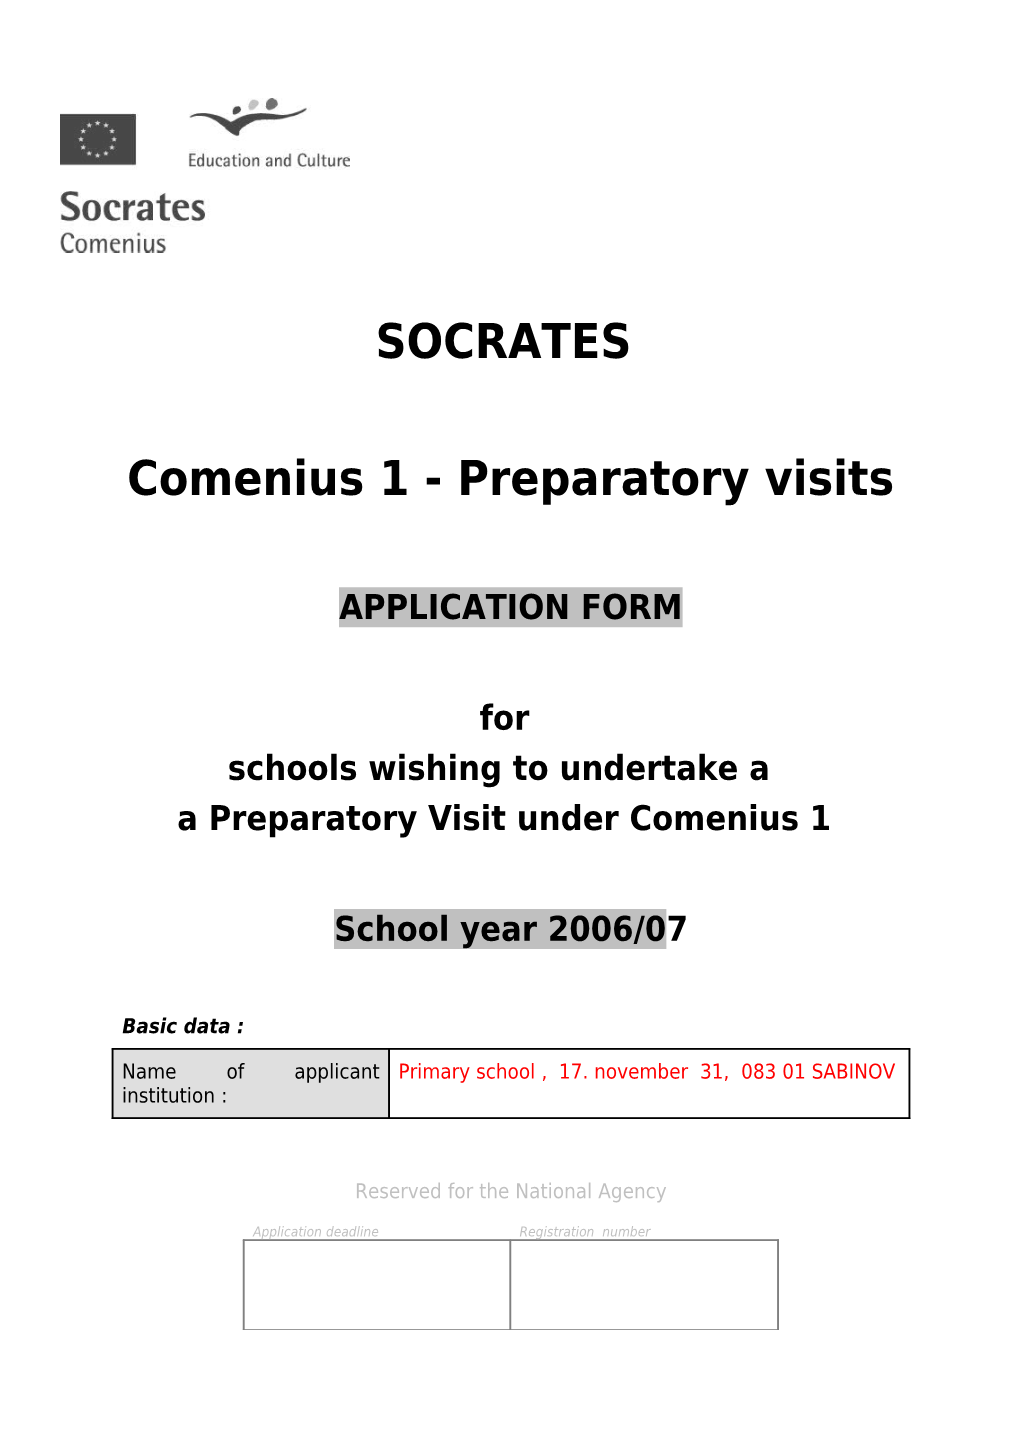 Comenius 1 - Preparatory Visits